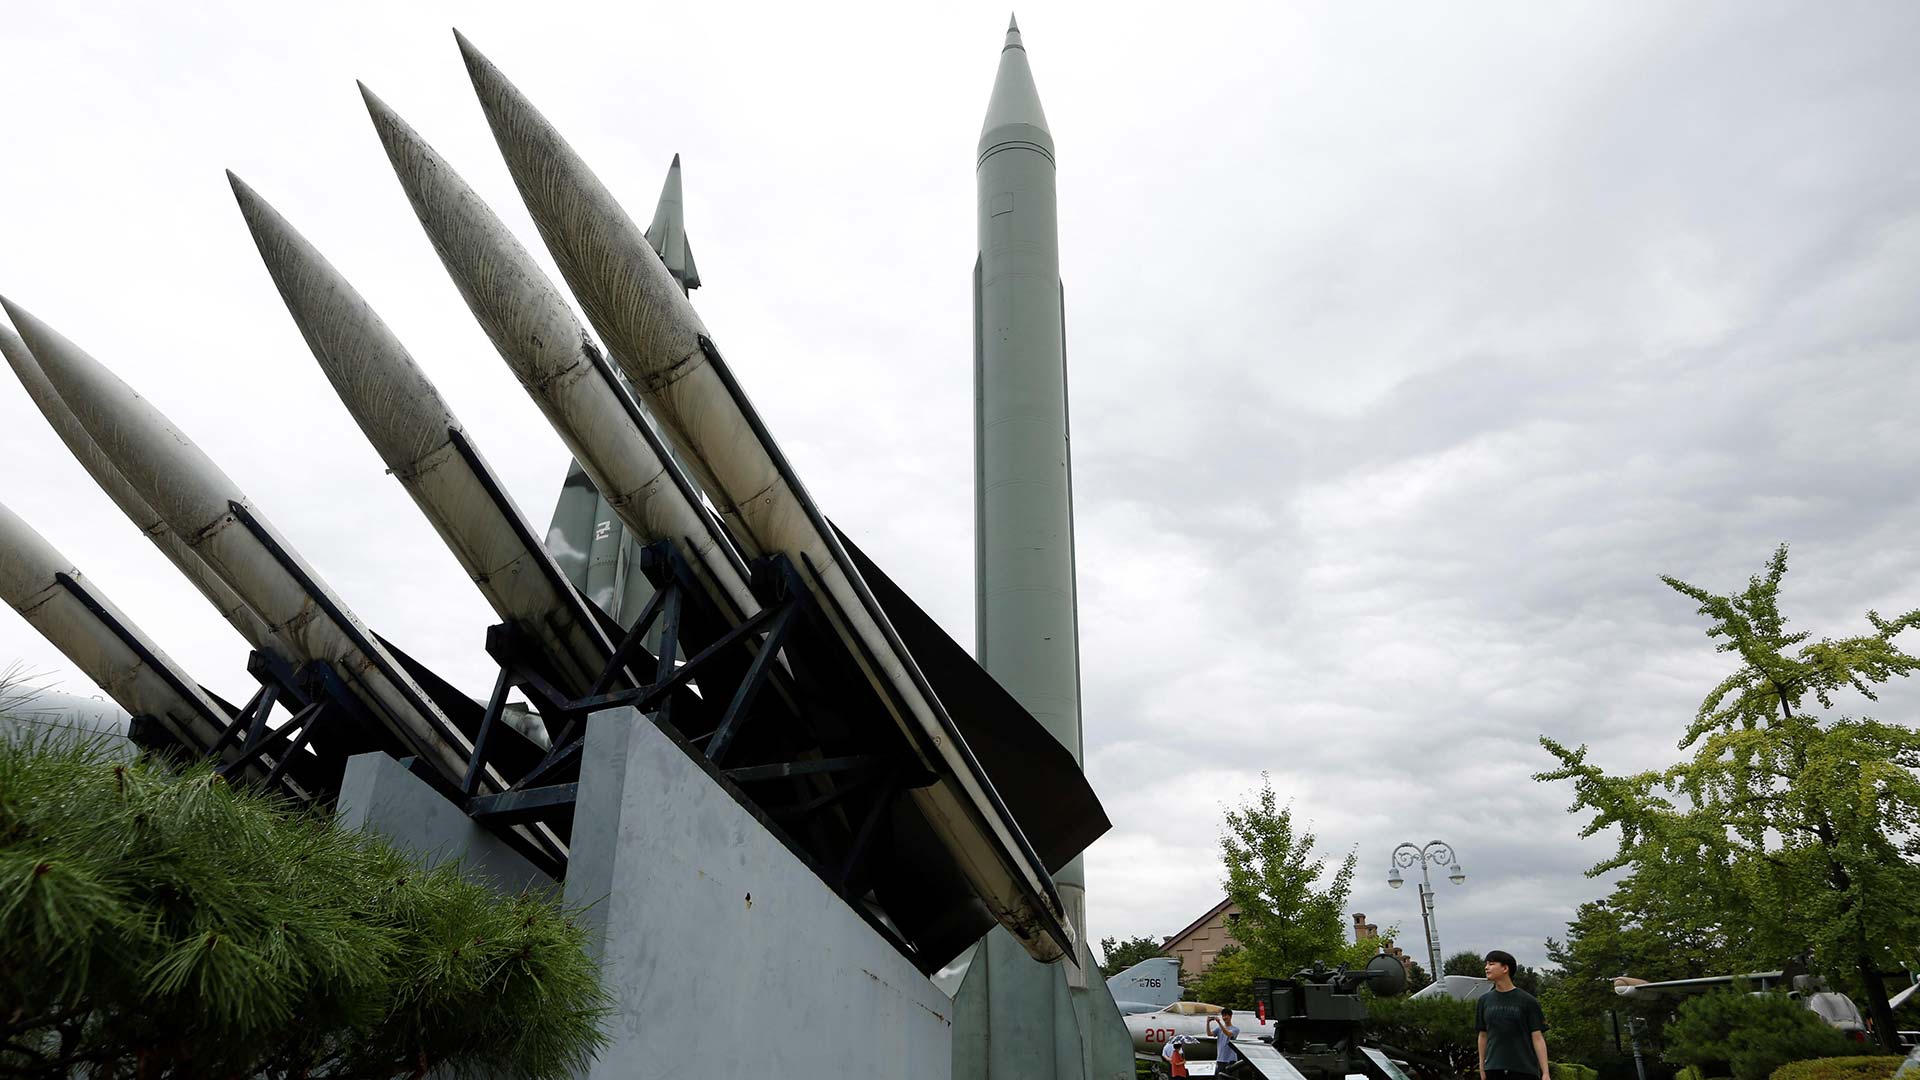 Corea del Norte lanza más misiles y amenaza a Corea del Sur y a Estados Unidos por sus maniobras